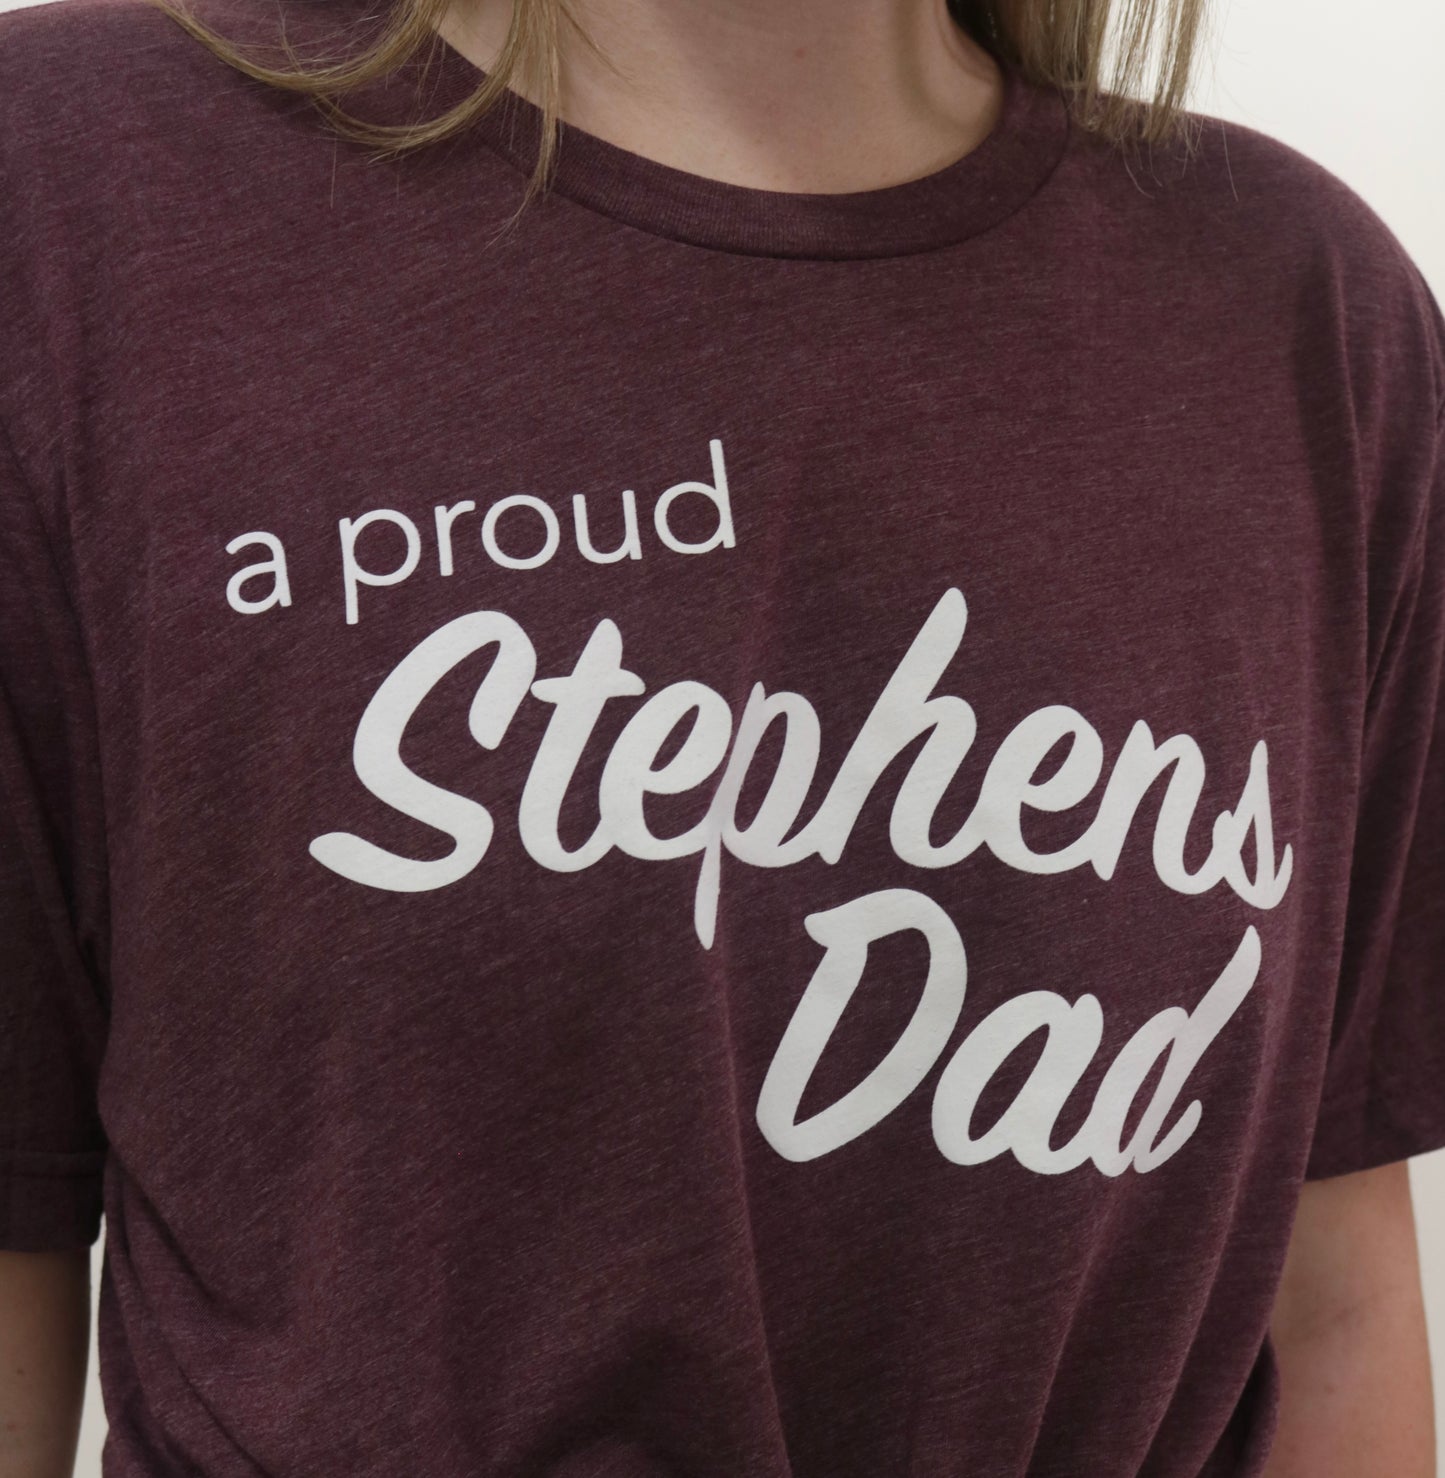 Stephens Dad Tee